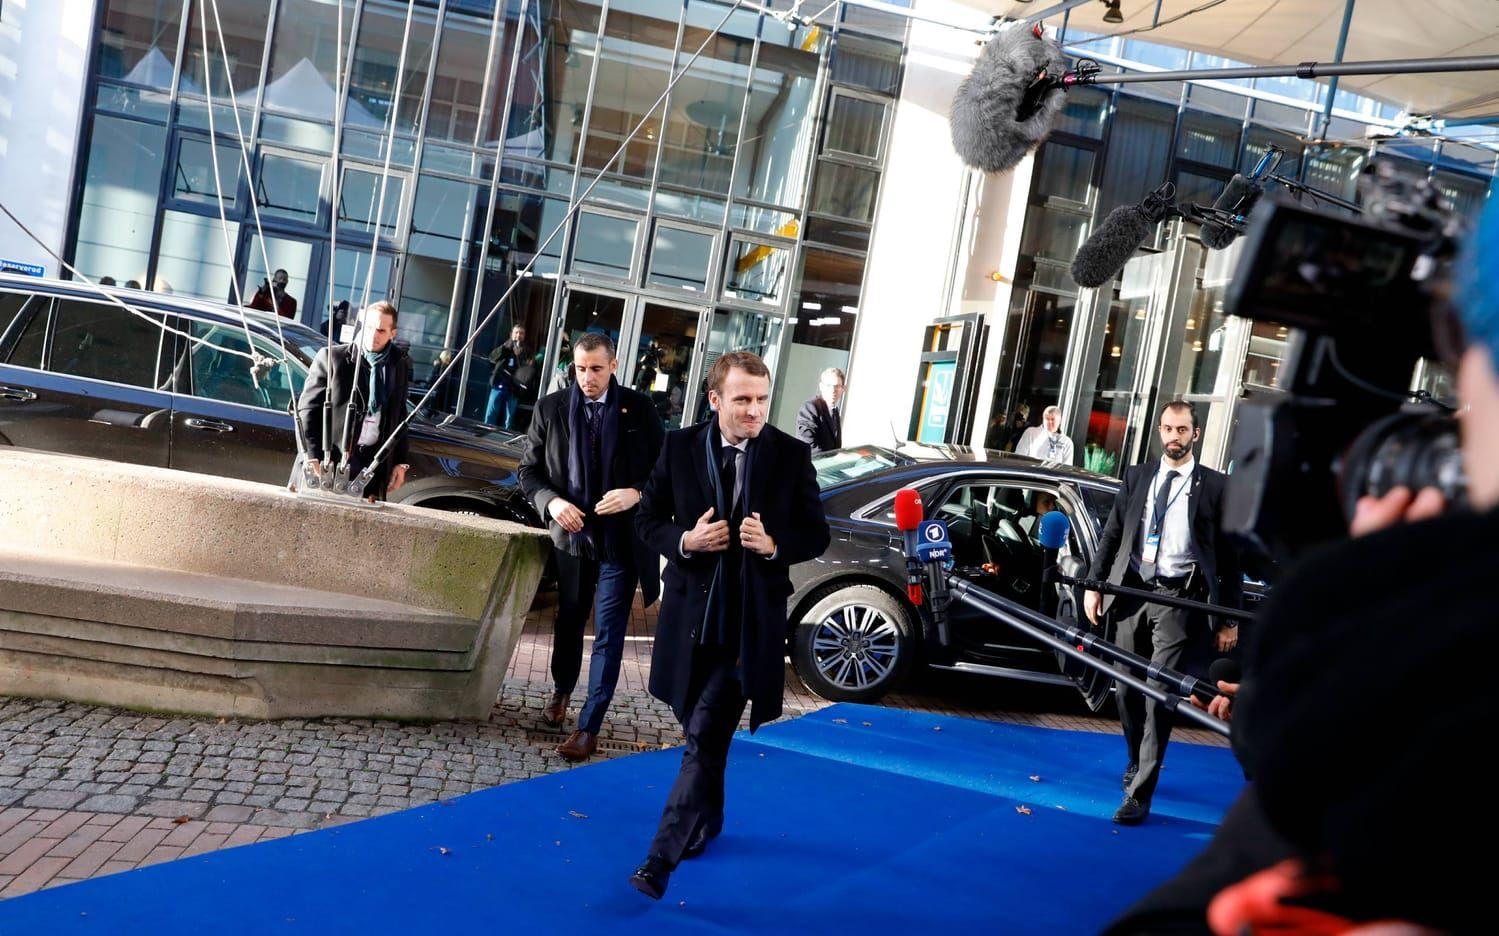 Frankrikes presidentEmmanuel Macron anländer till mötet i Eriksberg. Bild: Jonas Lindstedt.
